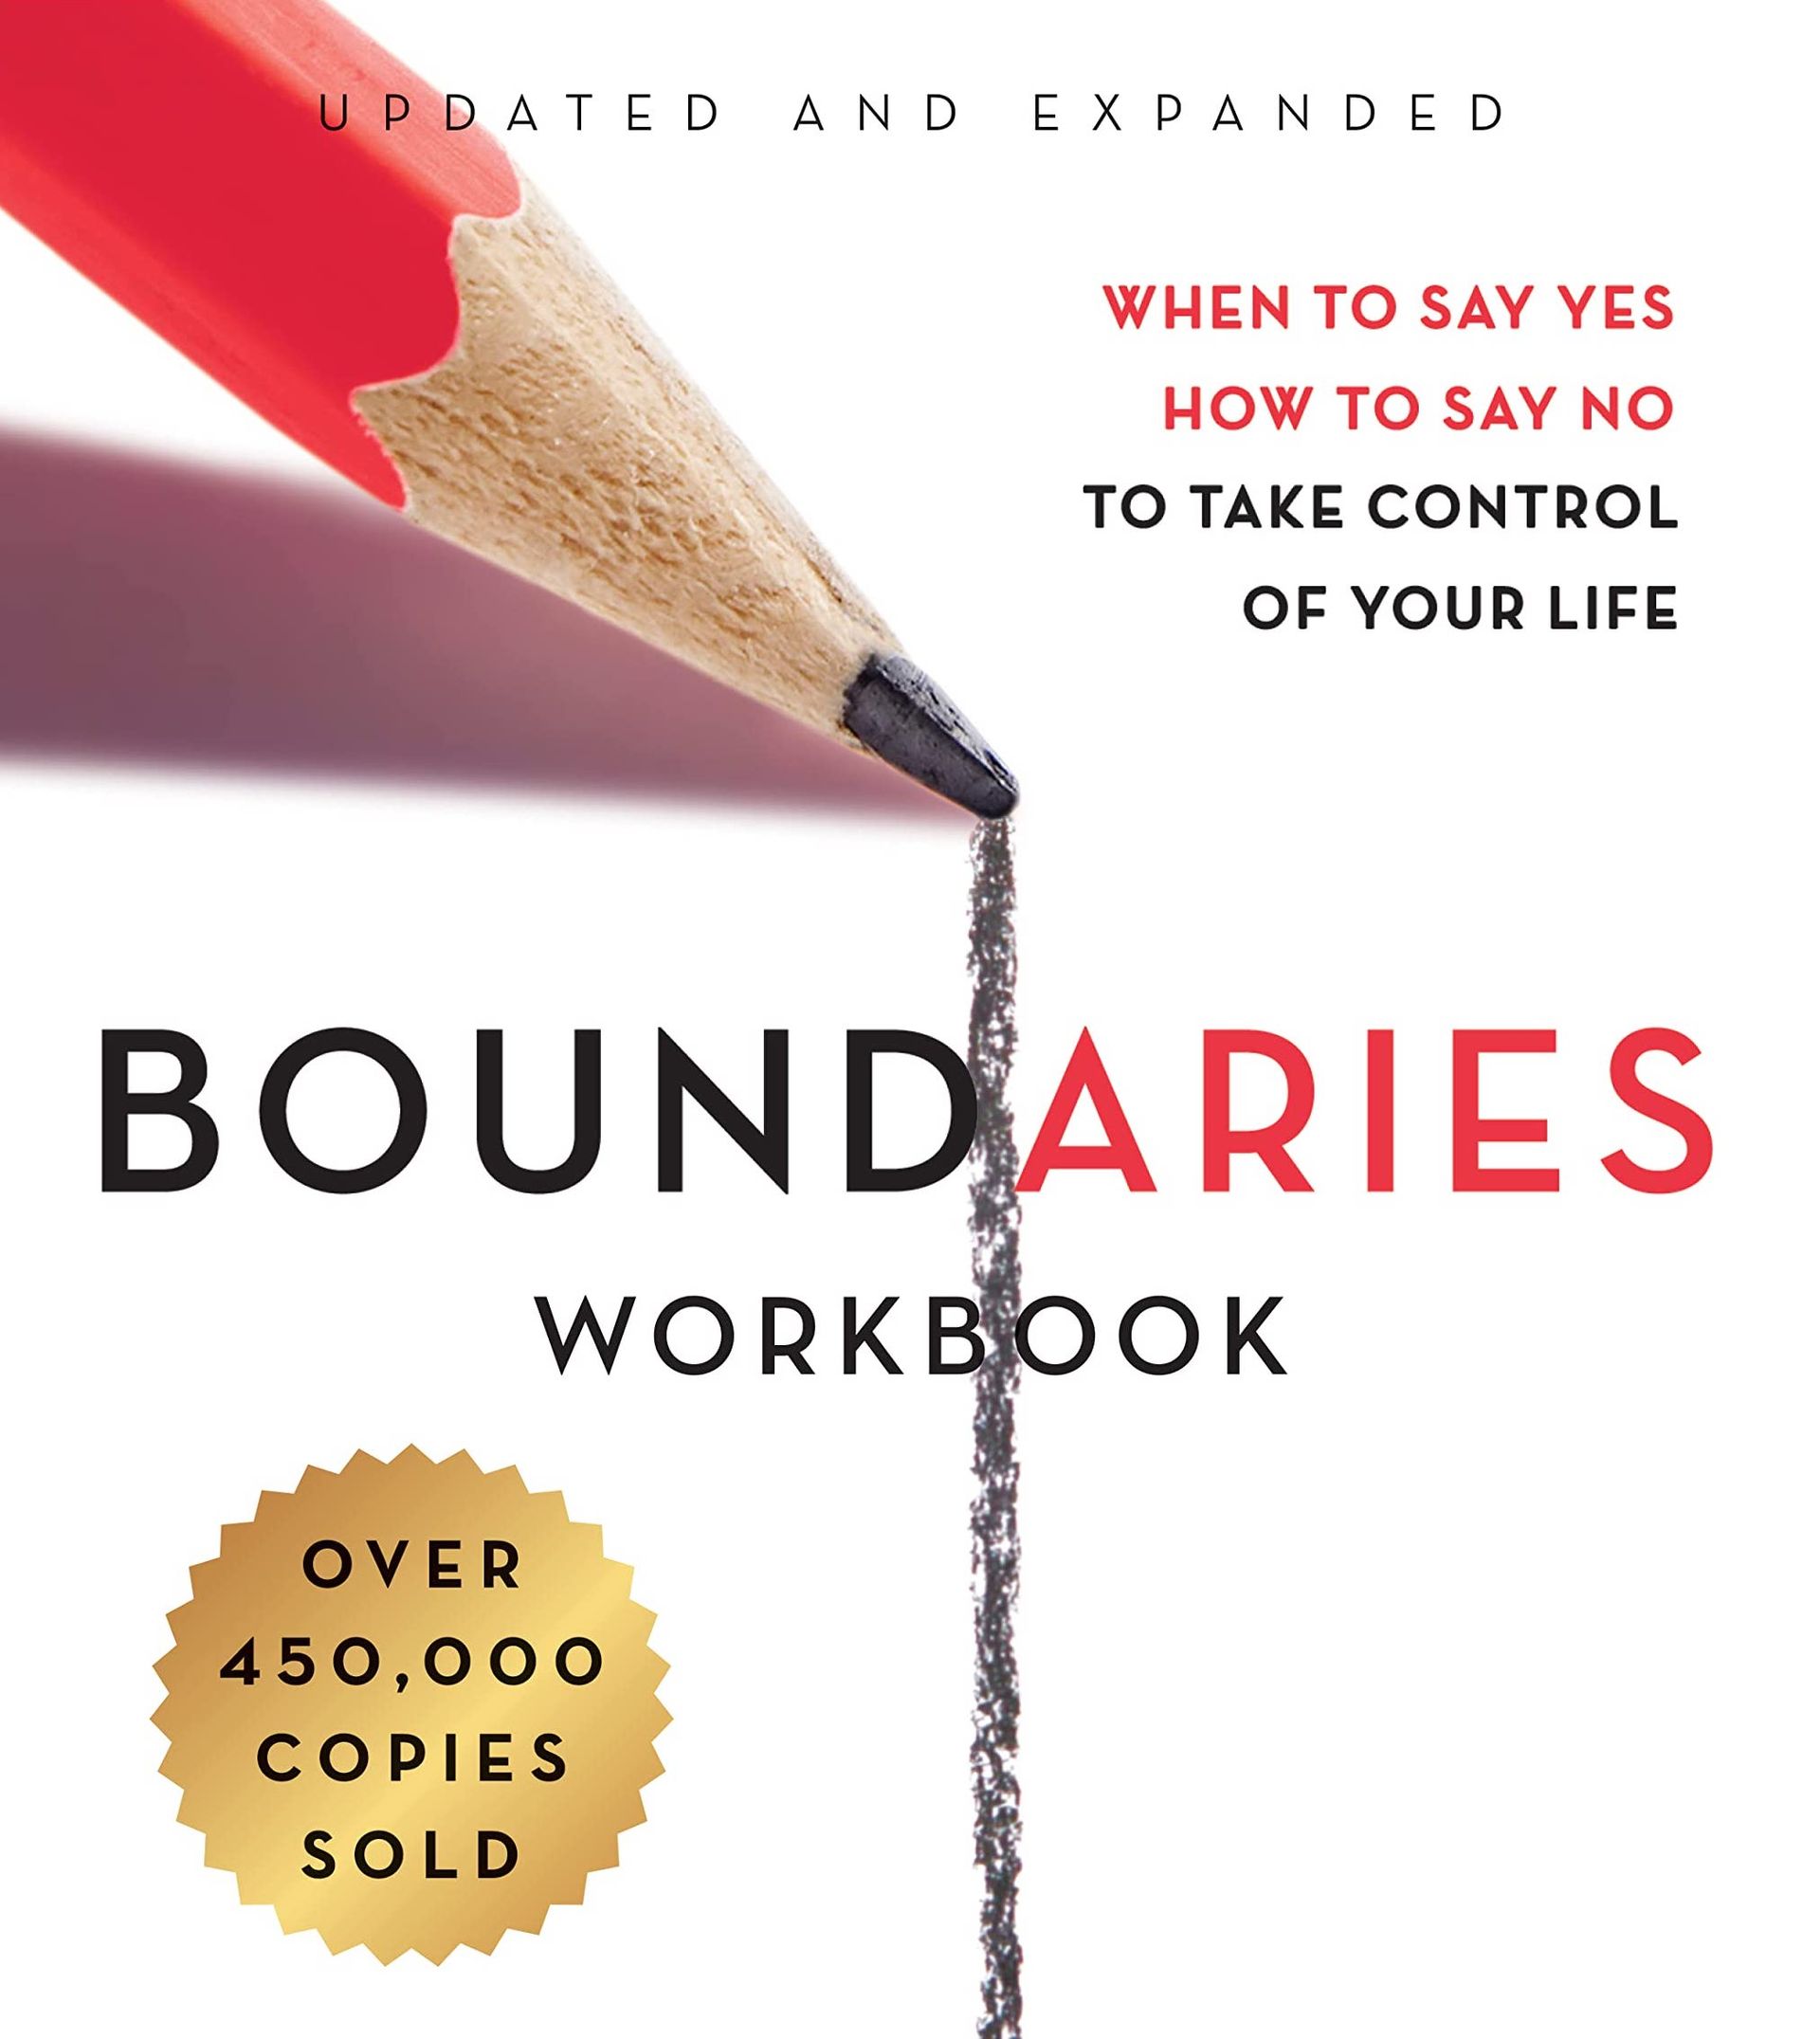 Boundaries Workbook by Cloud & Townsend